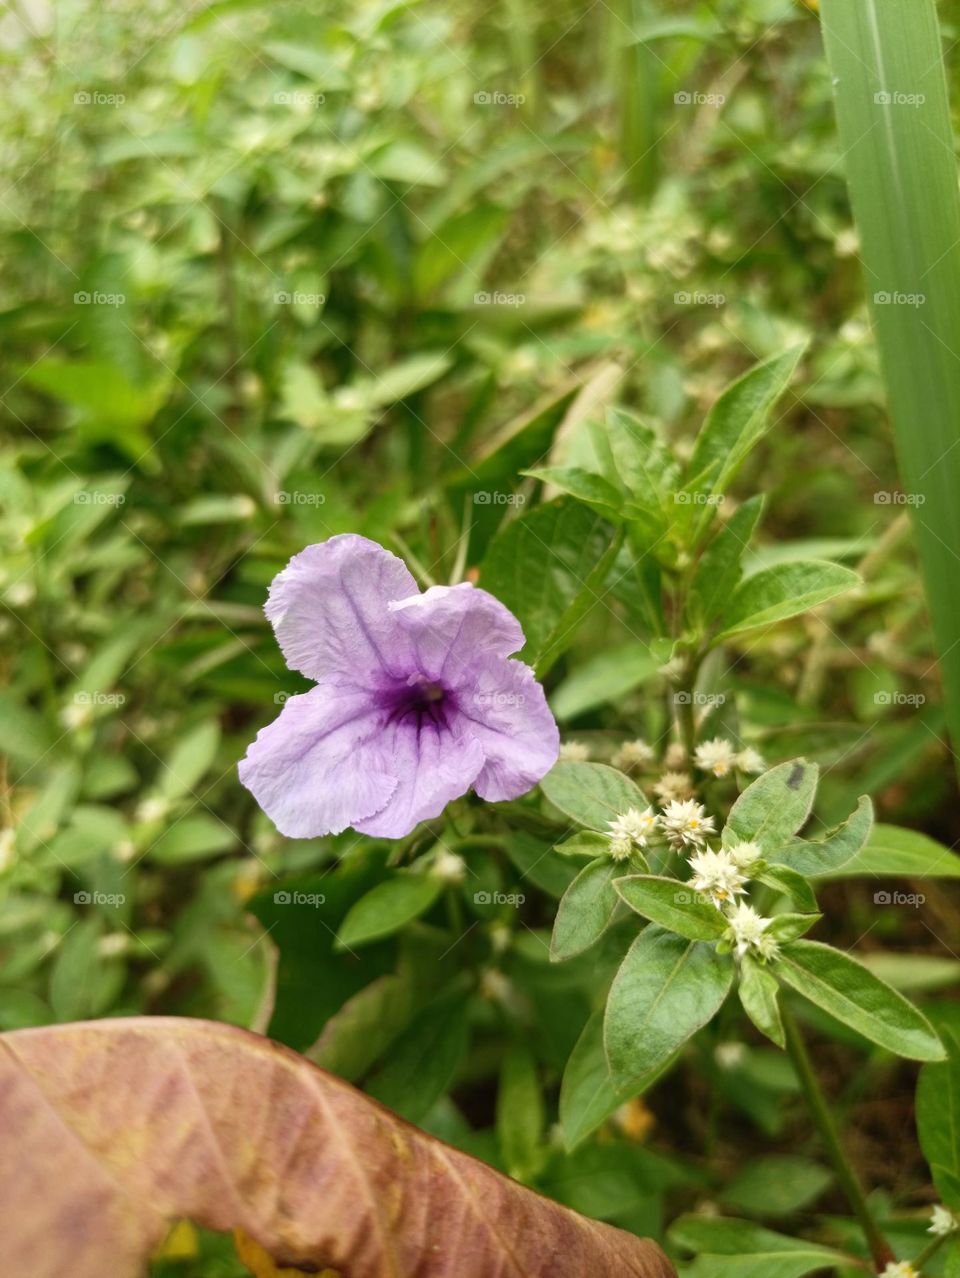 Simple Purple Flower